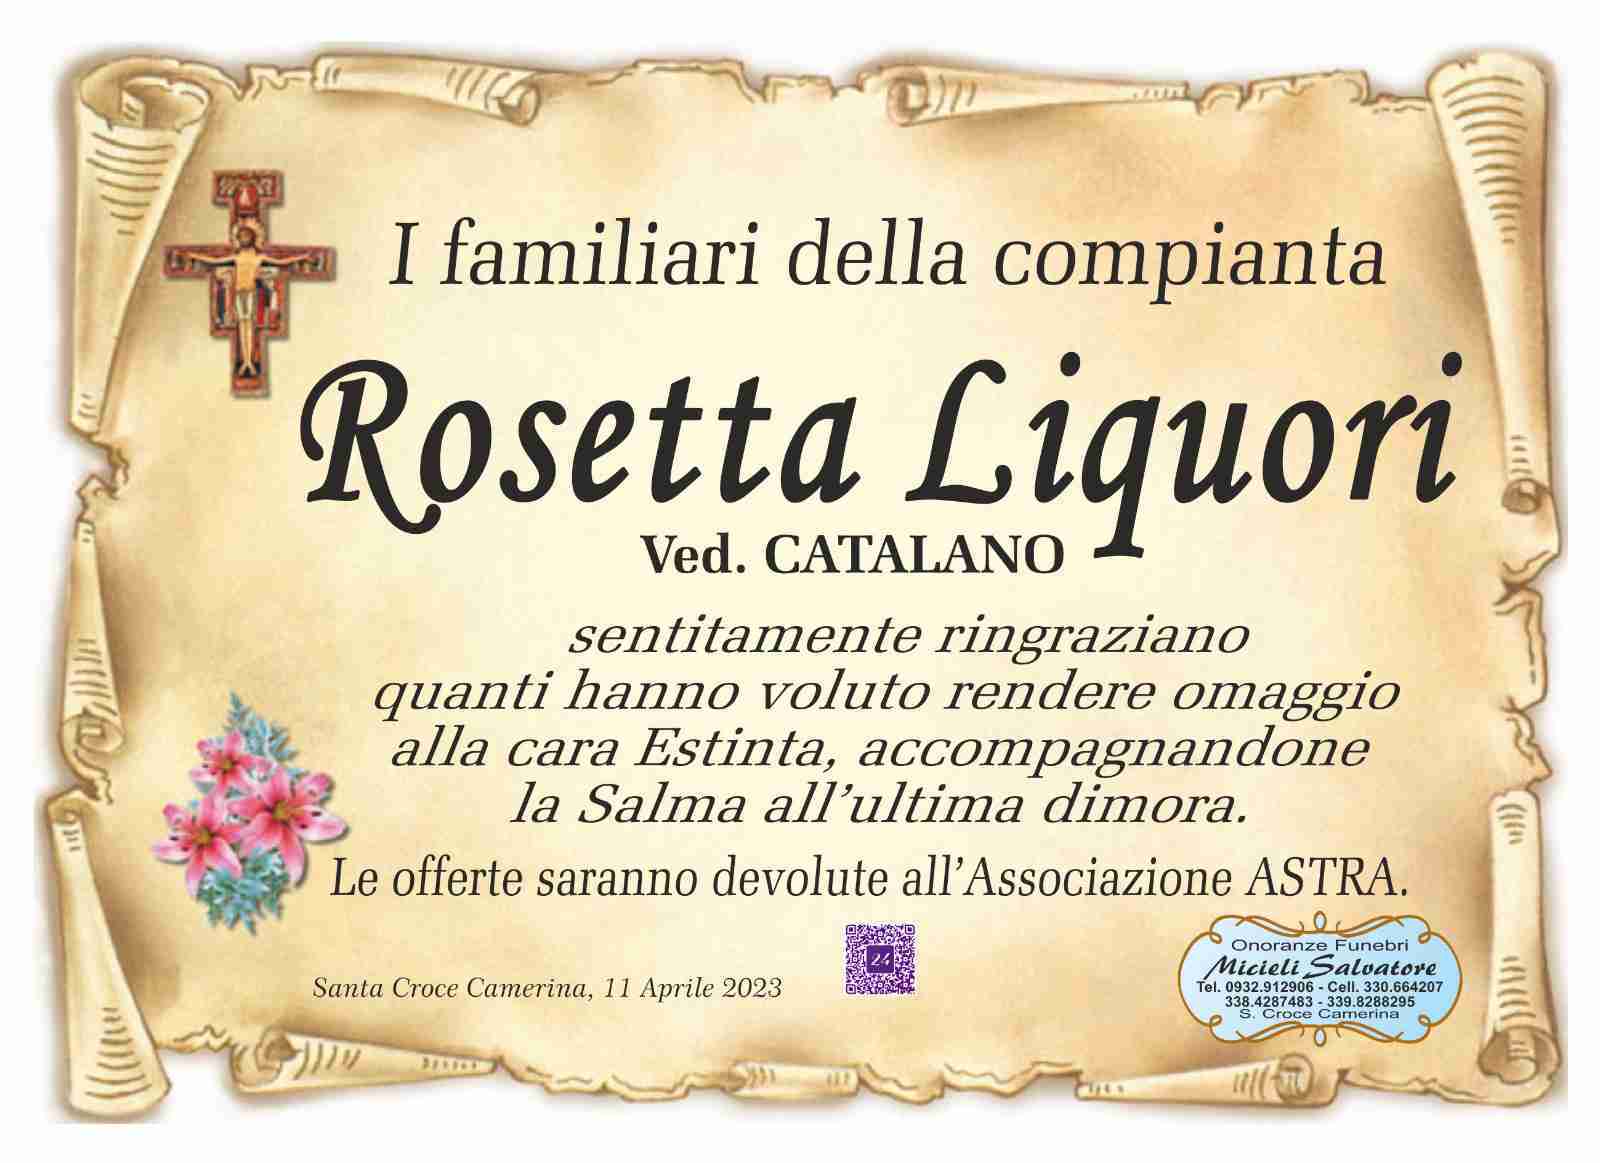 Rosetta Liquori